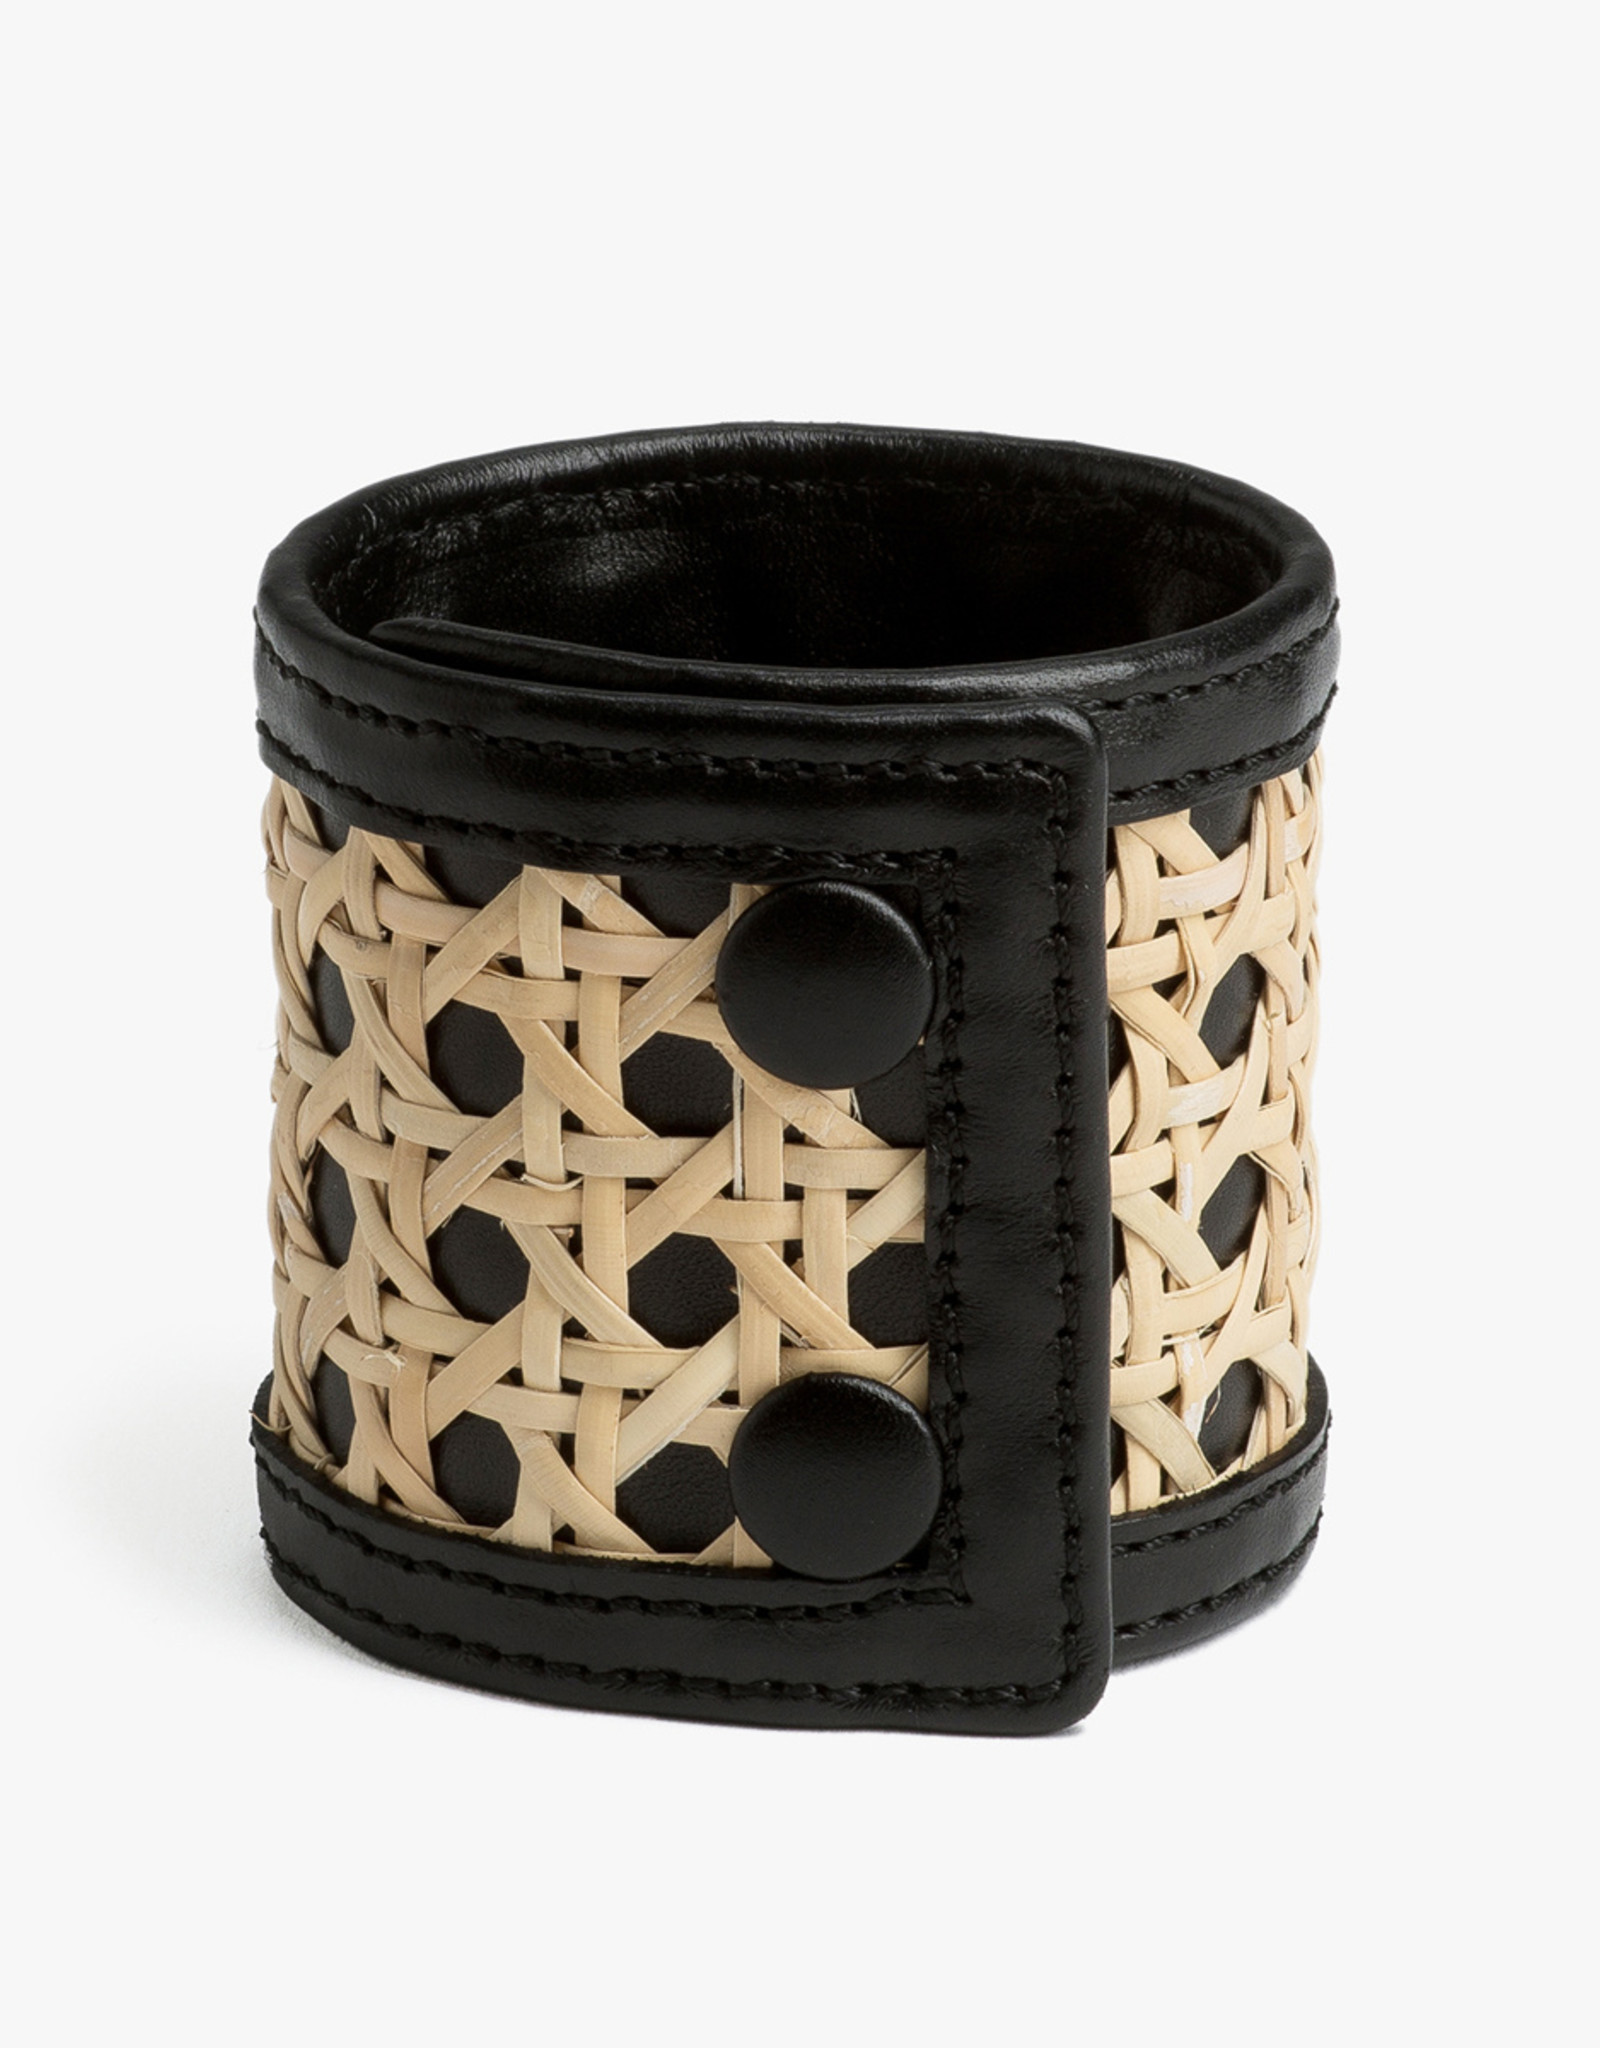 Rattan Bracelet by Palmgrens | Black leather